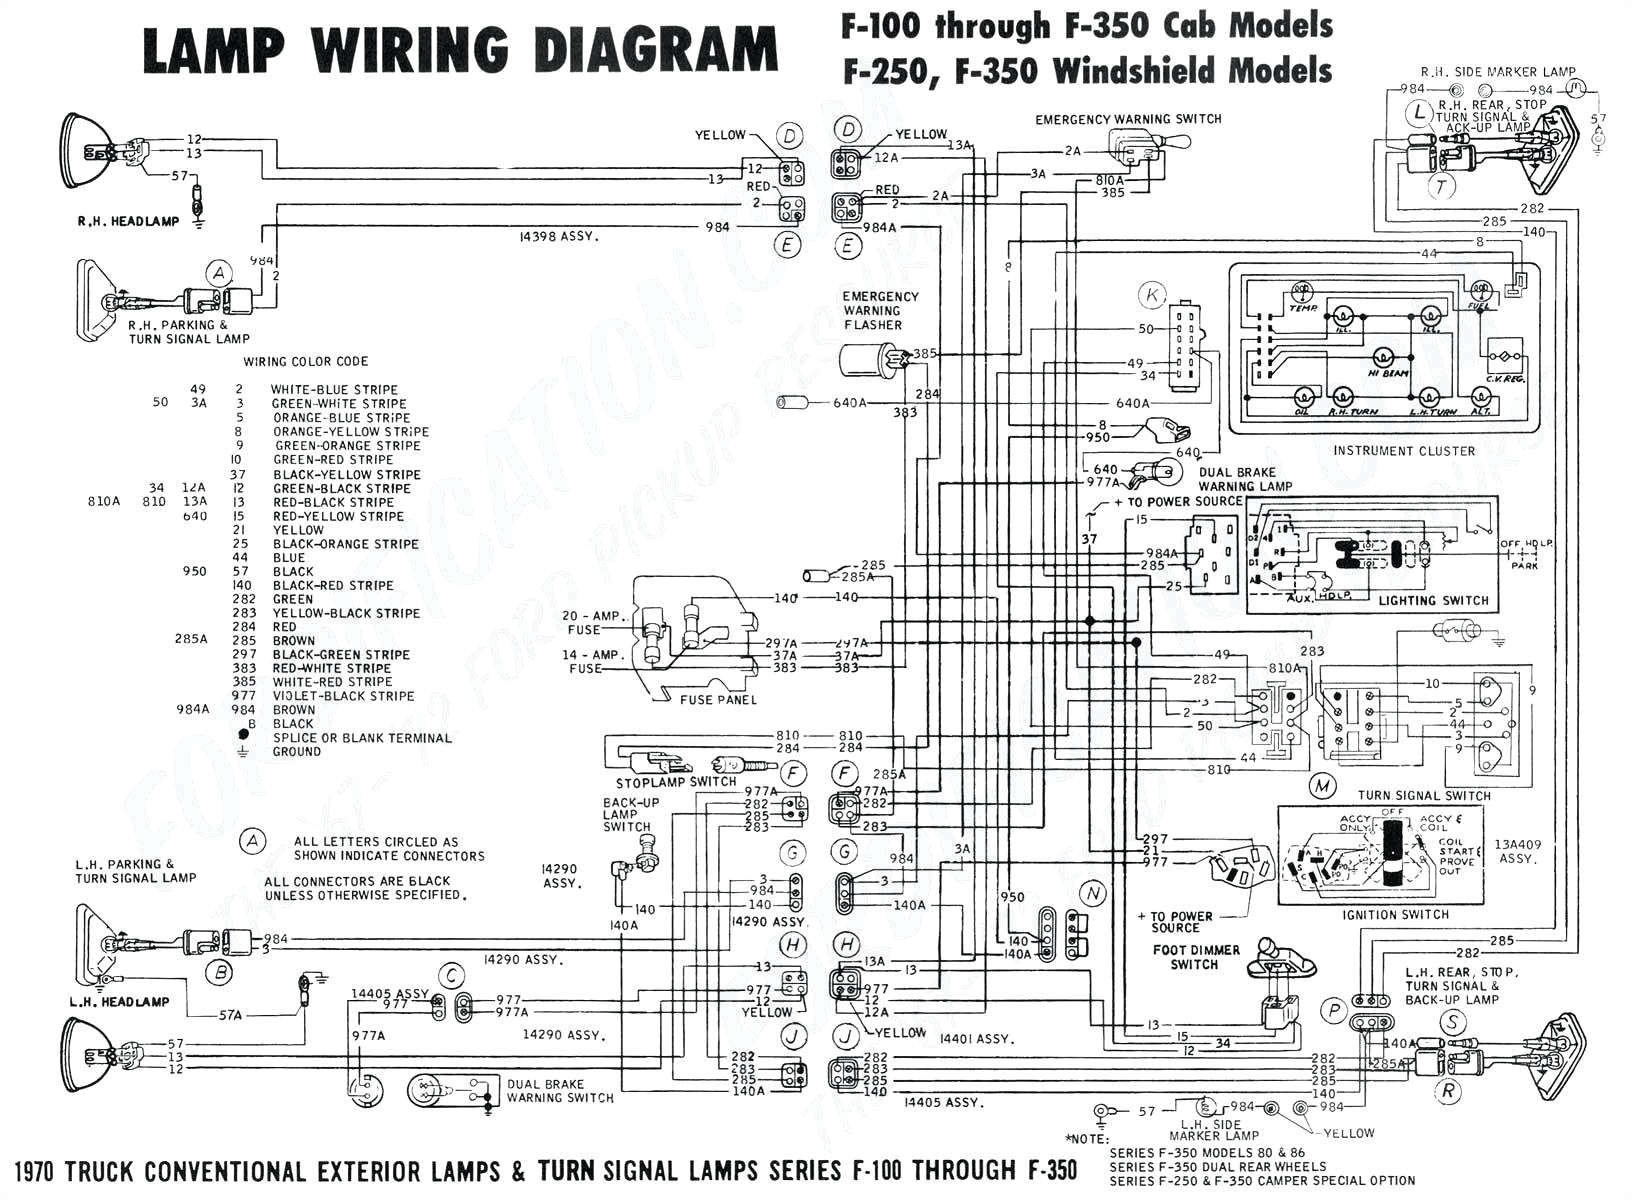 1985 corvette wiring schematic wiring diagram post 1985 corvette steering column diagram wiring schematic